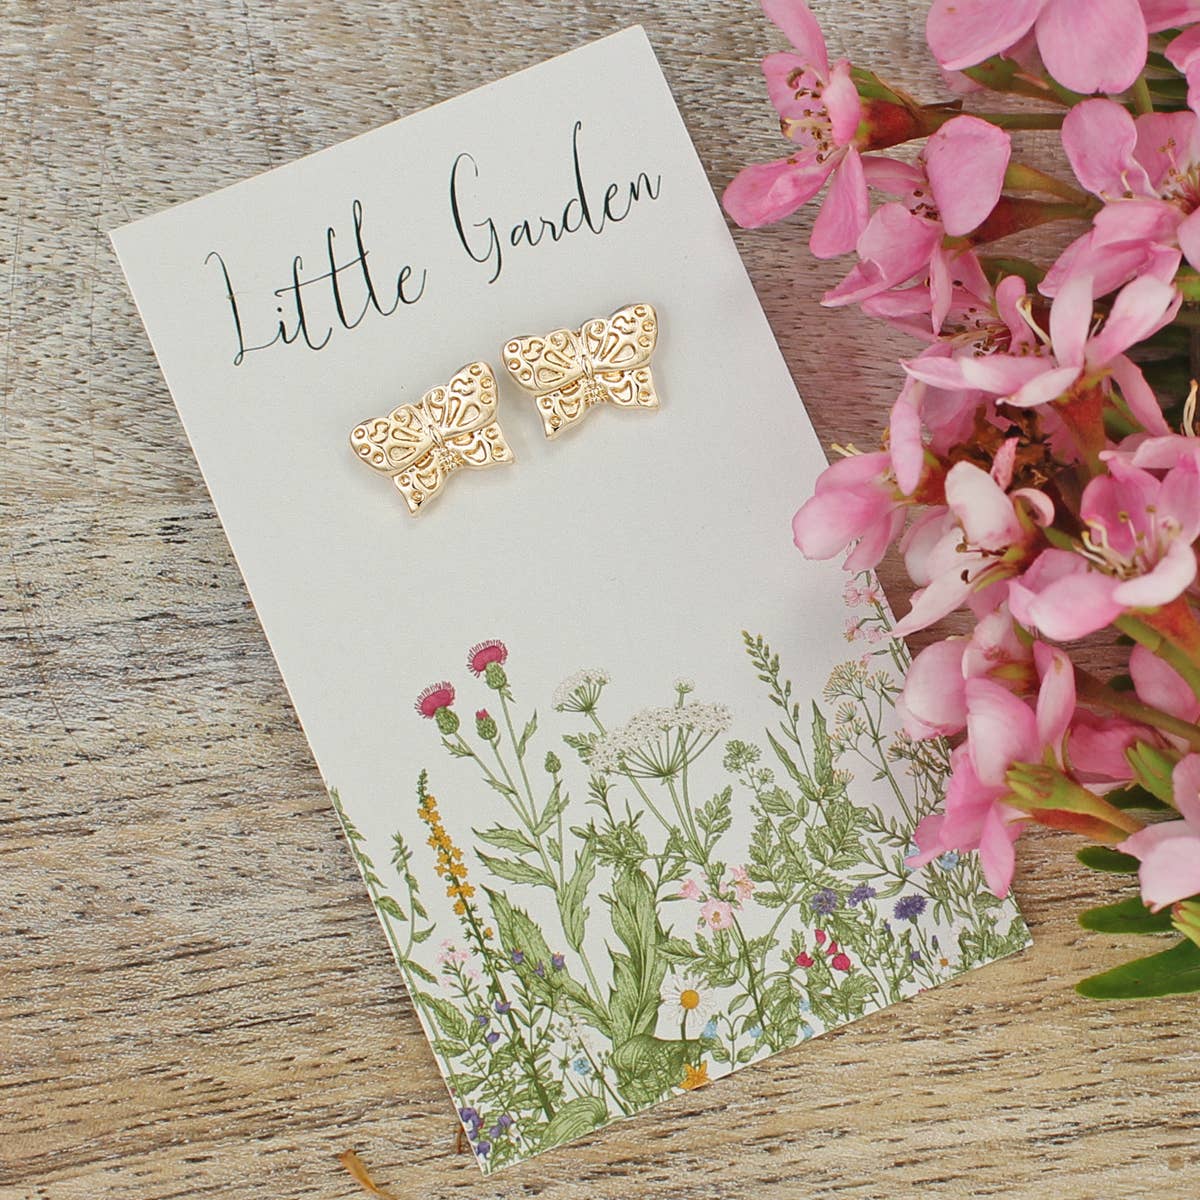 Little Garden Gold Butterfly Post Earrings